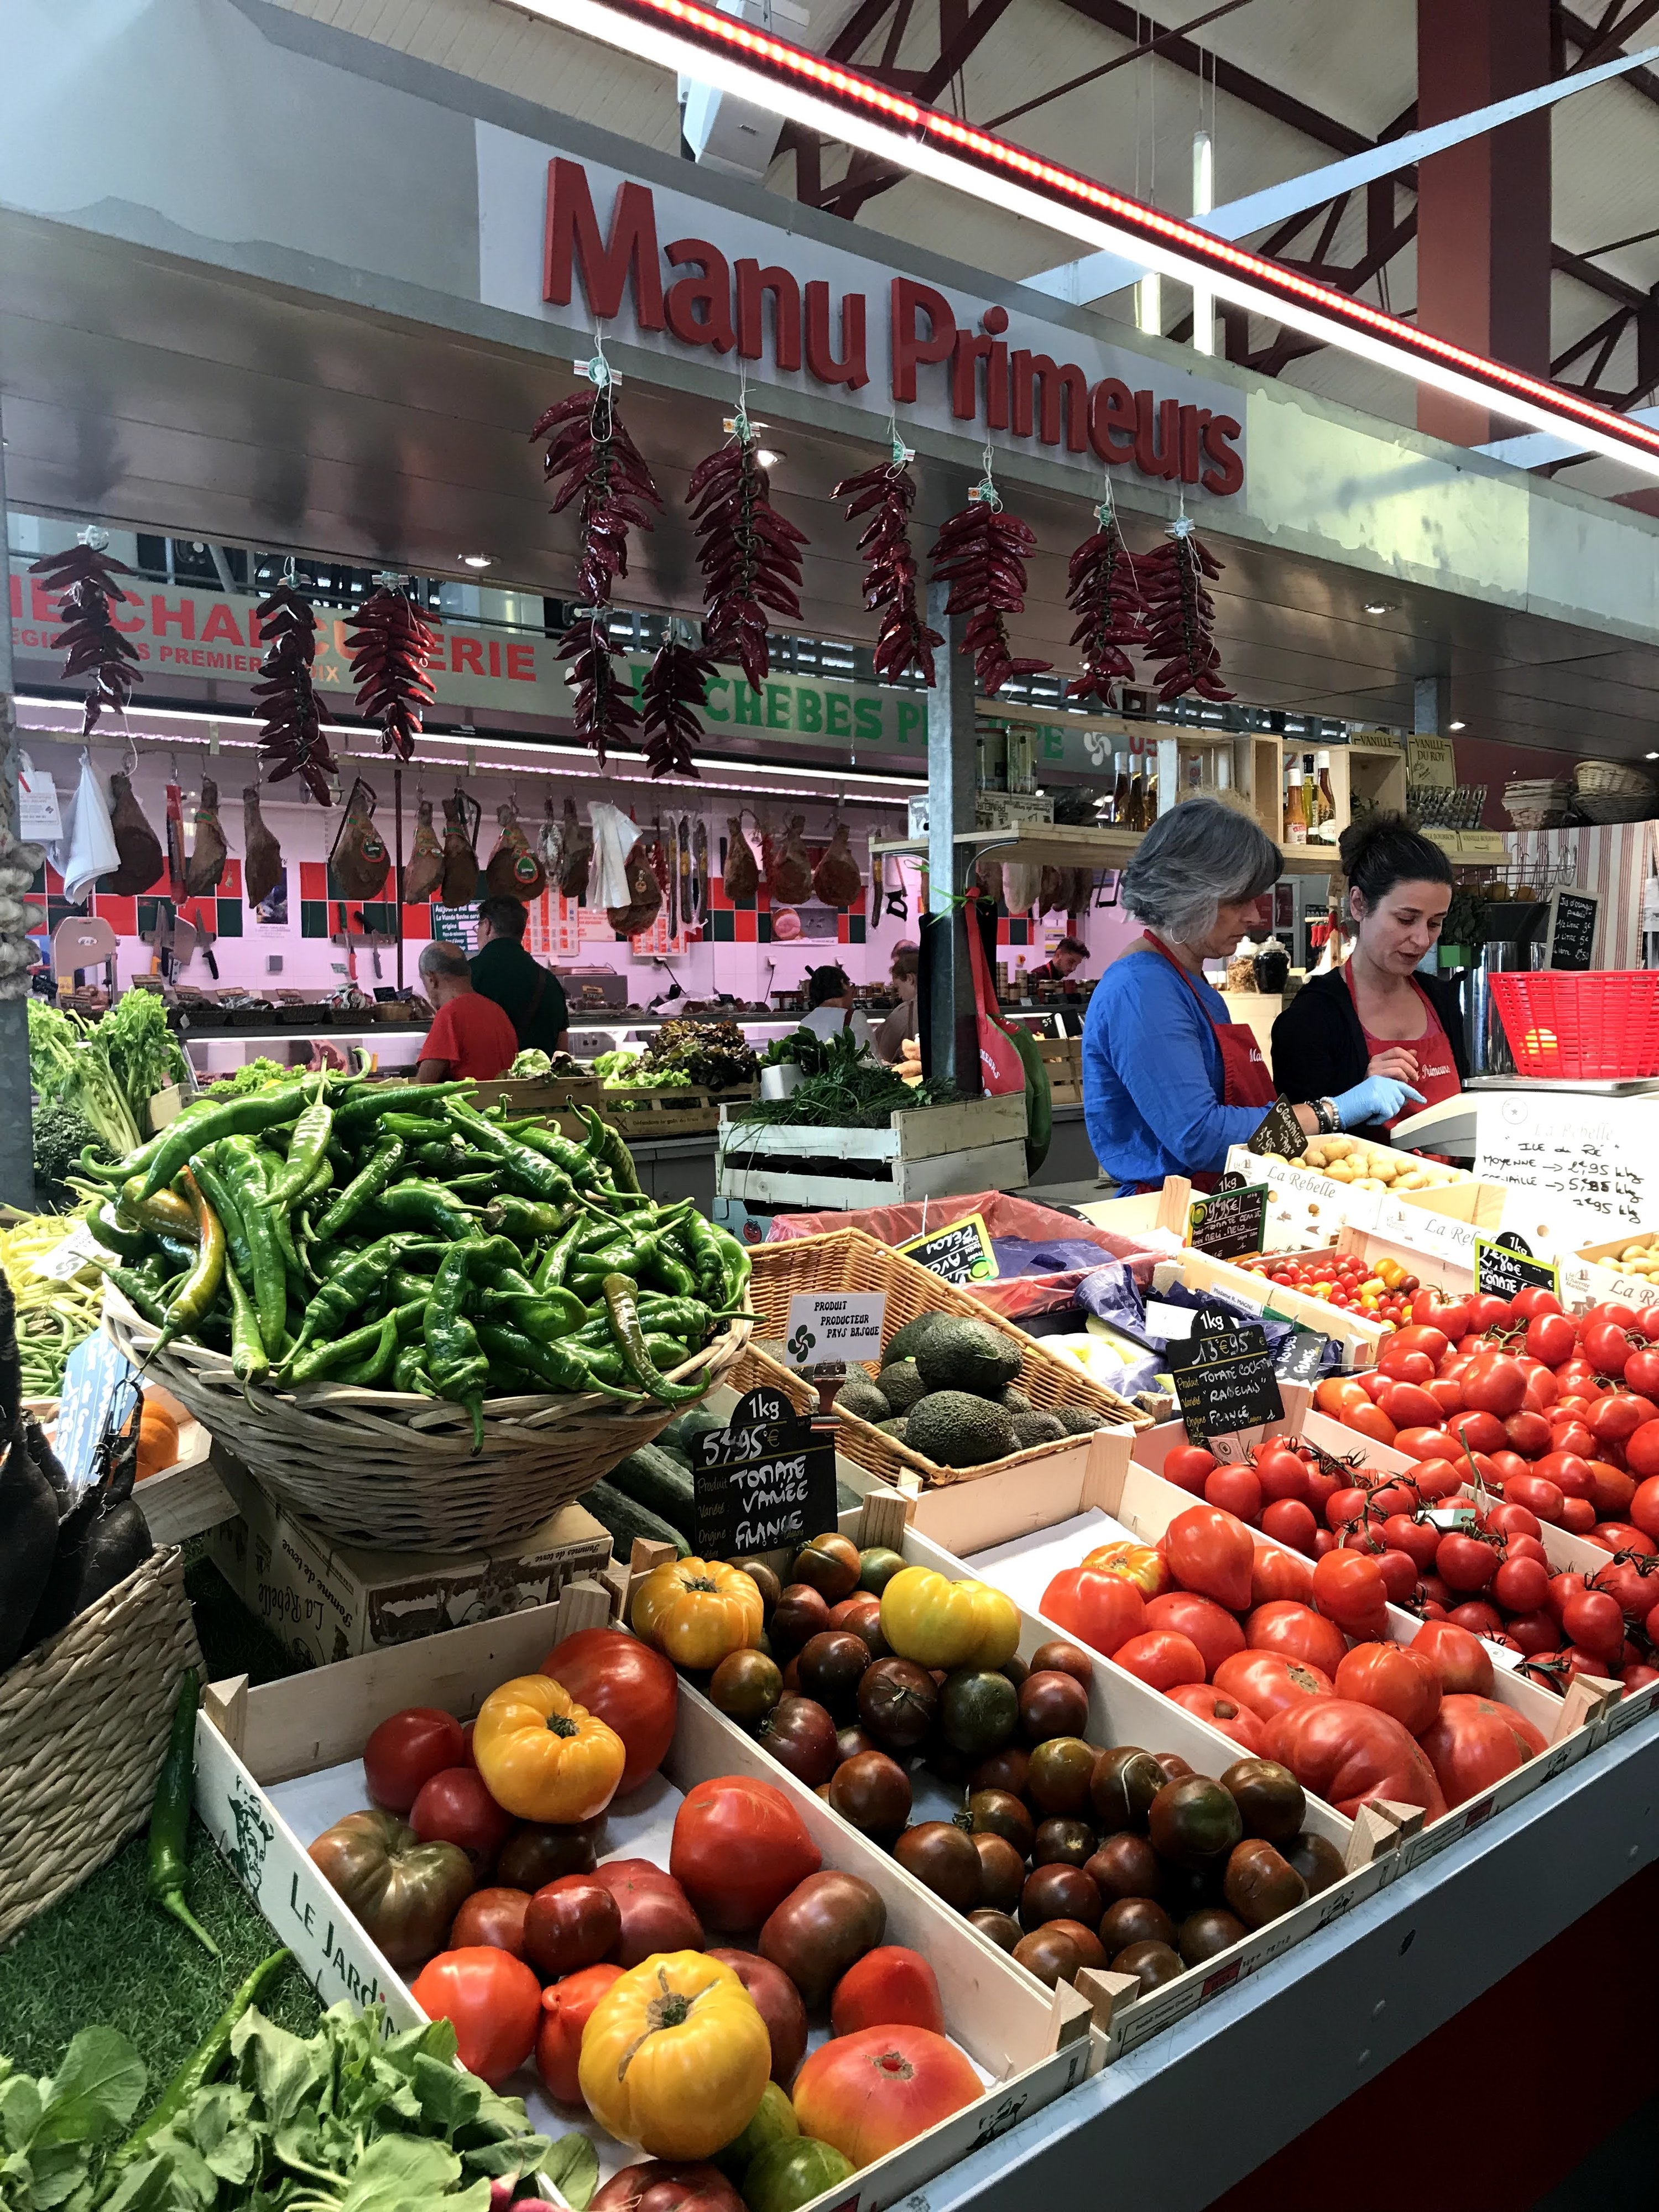 箱西红柿等蔬菜农贸市场摊位